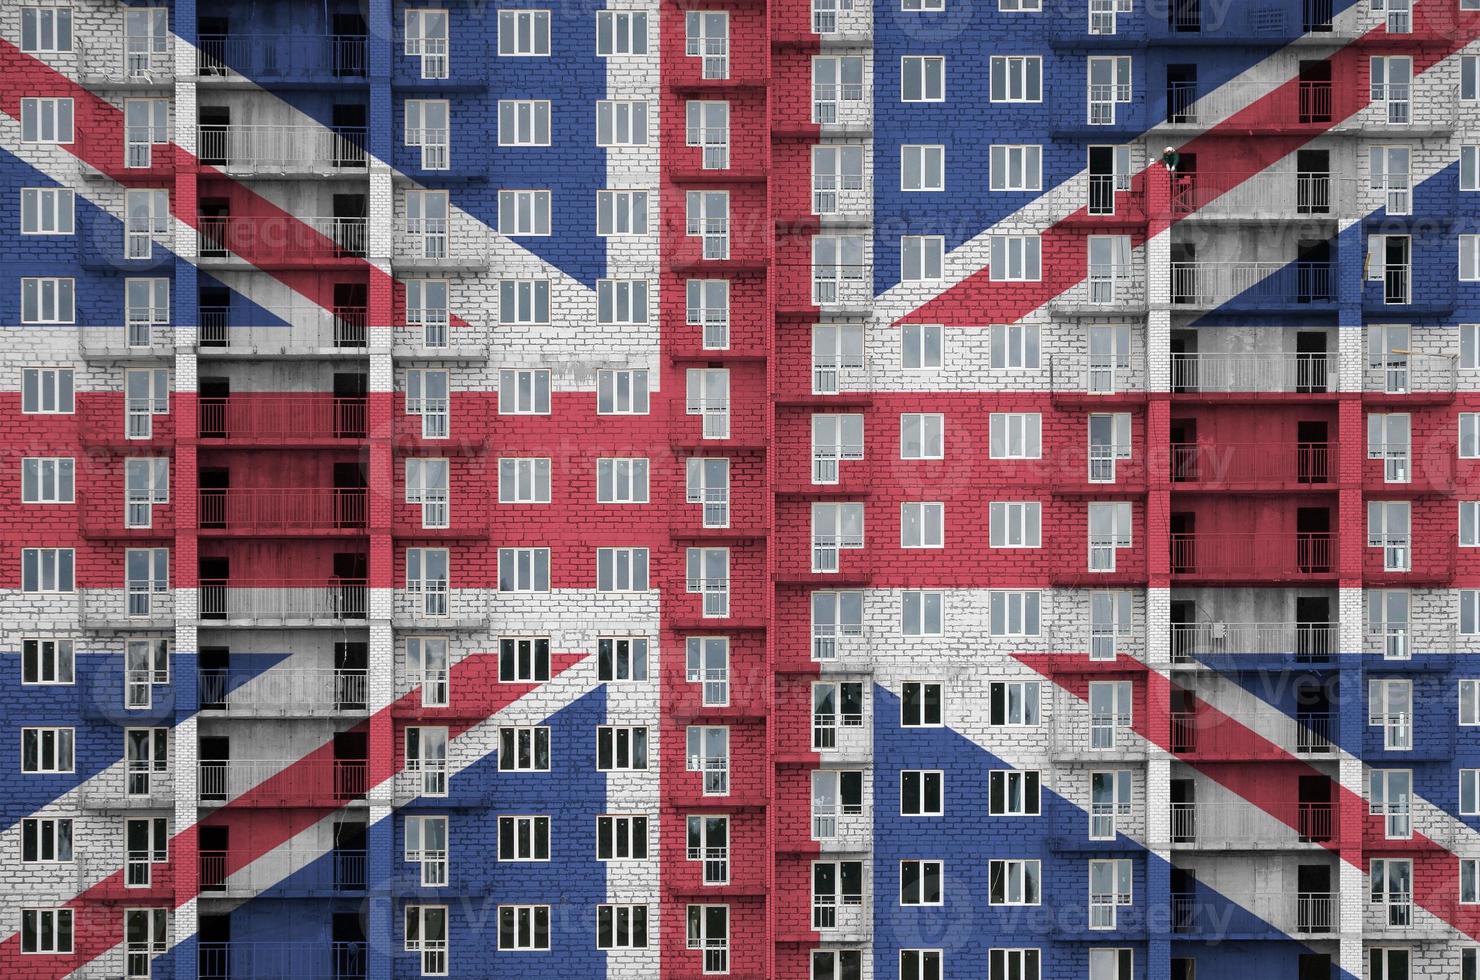 Großbritannien-Flagge in Lackfarben auf im Bau befindlichen mehrstöckigen Wohngebäuden dargestellt. strukturiertes banner auf backsteinmauerhintergrund foto